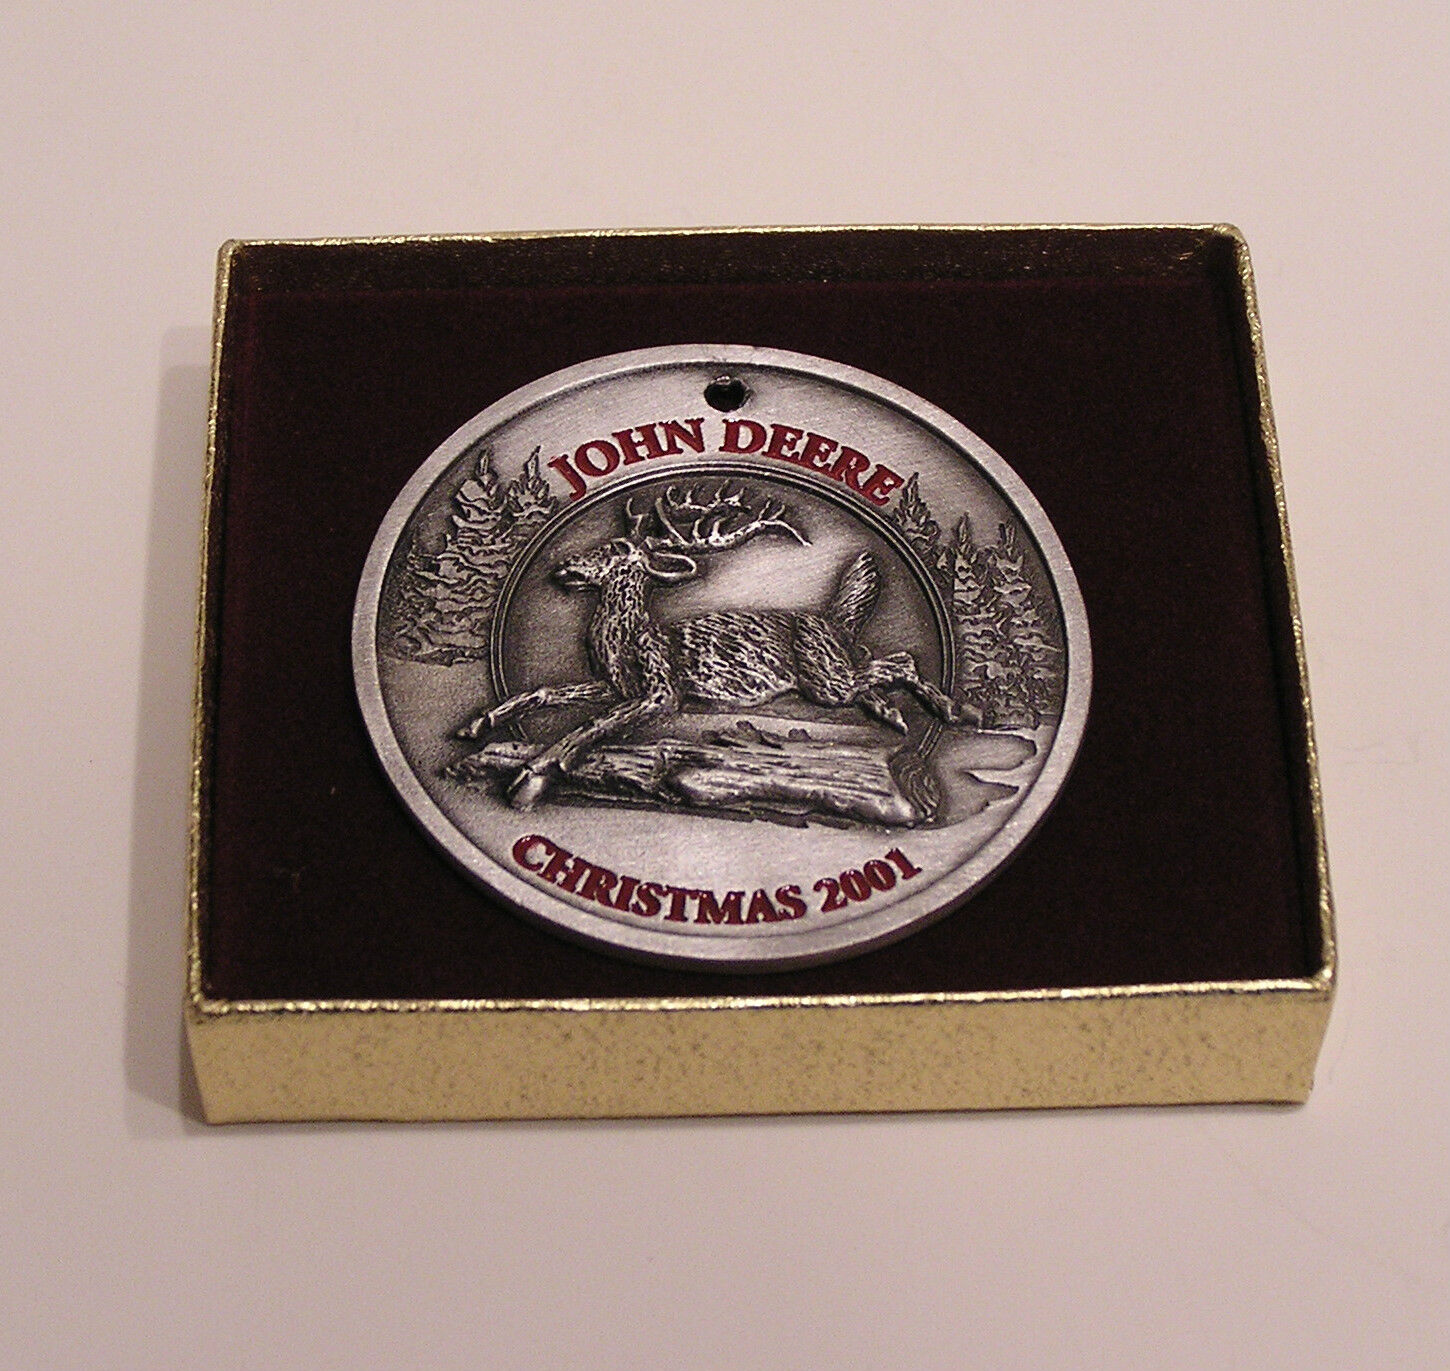 2001 John Deere Pewter Christmas Ornament